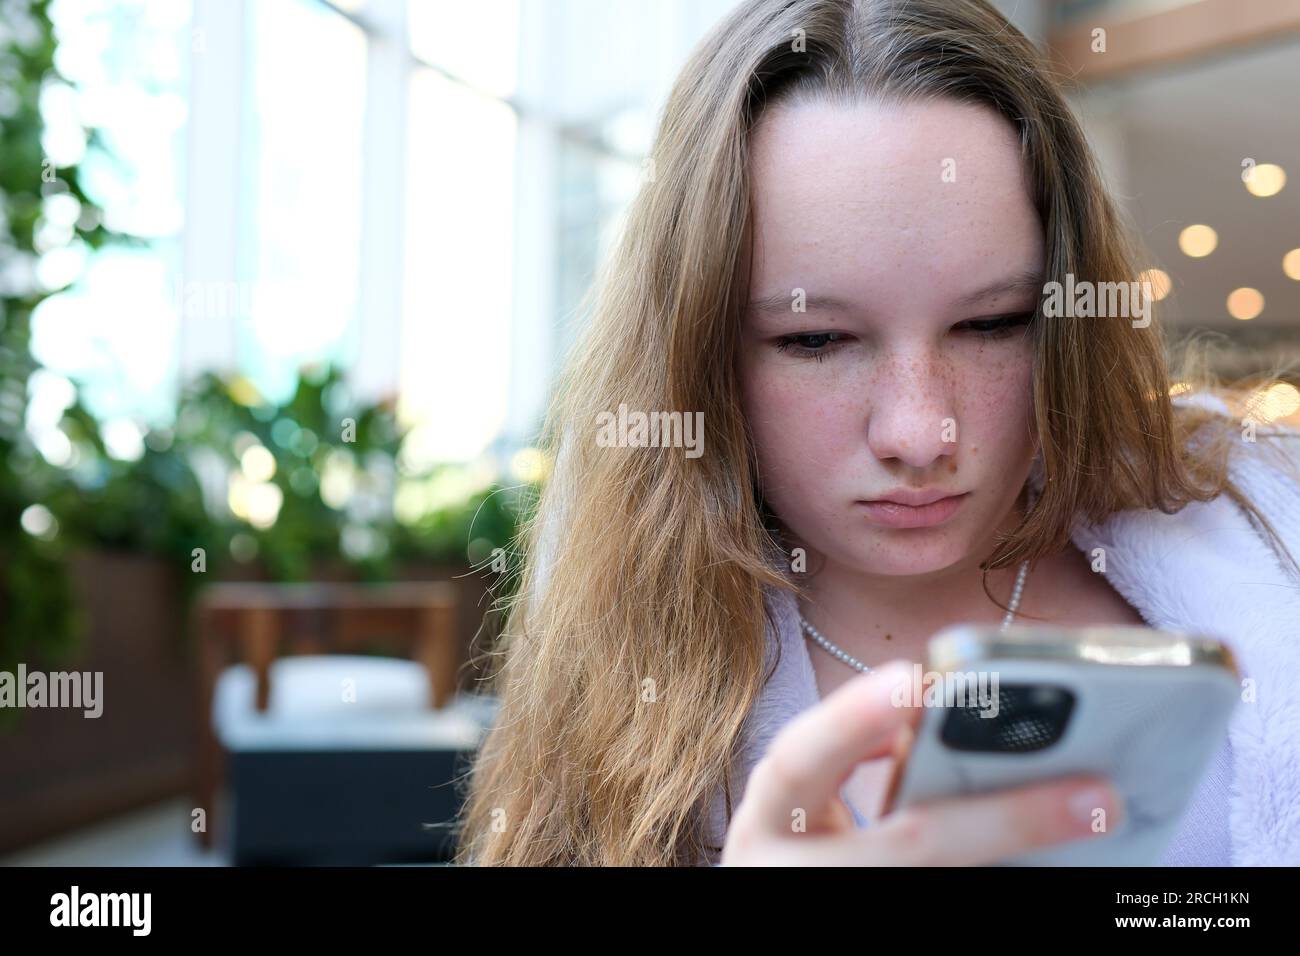 Ein junges Mädchen mit Sommersprossen eine europäische Frau sitzt mit einem Telefon in der Hand in der Lobby eines Hotels. Um nach Geolokalisierung zu suchen, buchen Sie ein Zimmer zum Ausruhen und erwarten Sie eine junge junge Person mit schönen Haaren Stockfoto